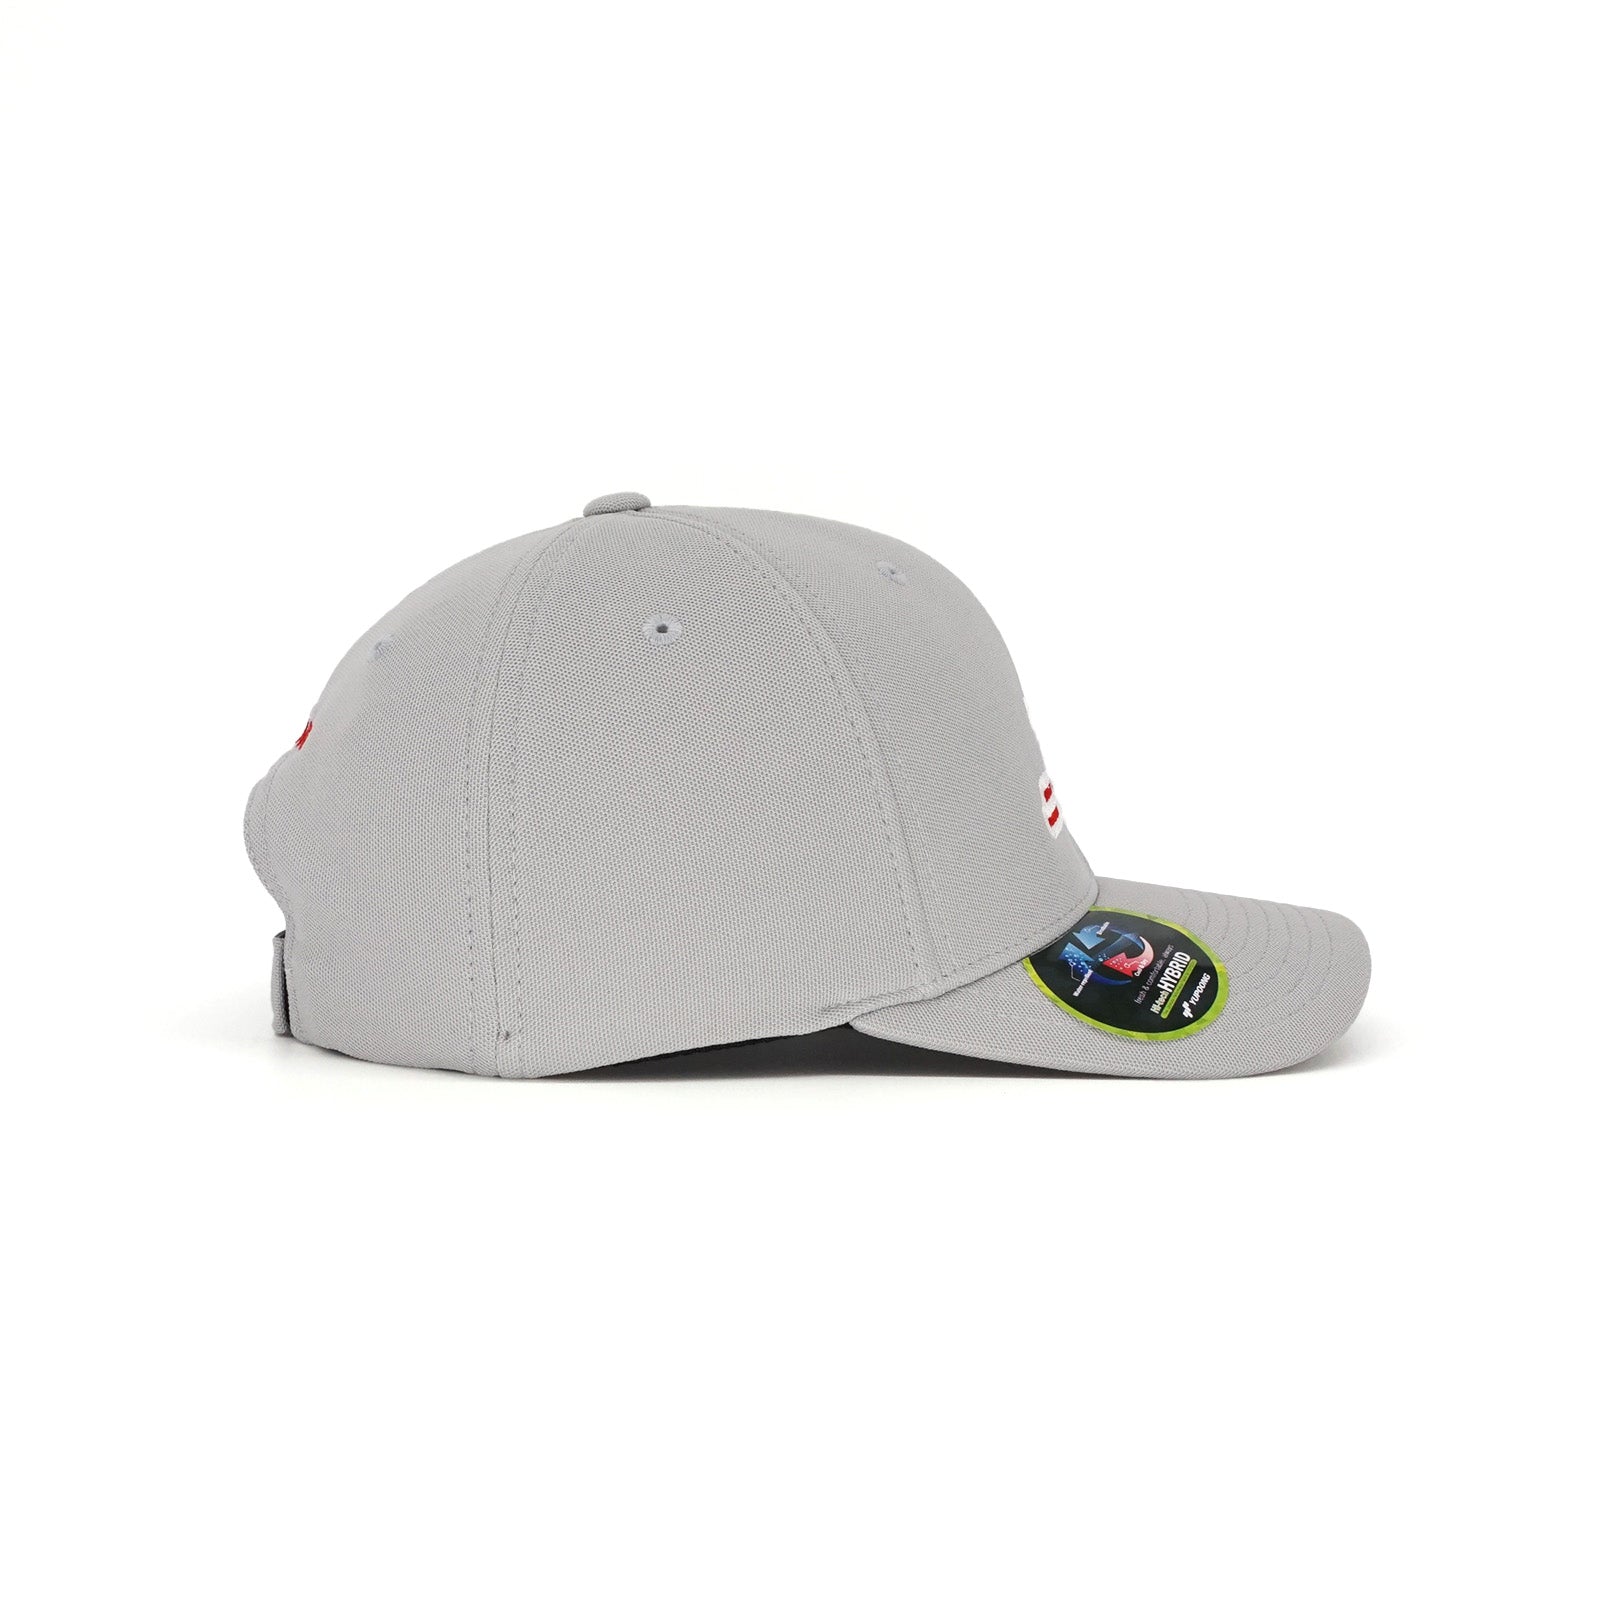 Birdie Slayer - Charcoal & White Flexfit® 110 Trucker Golf Hat